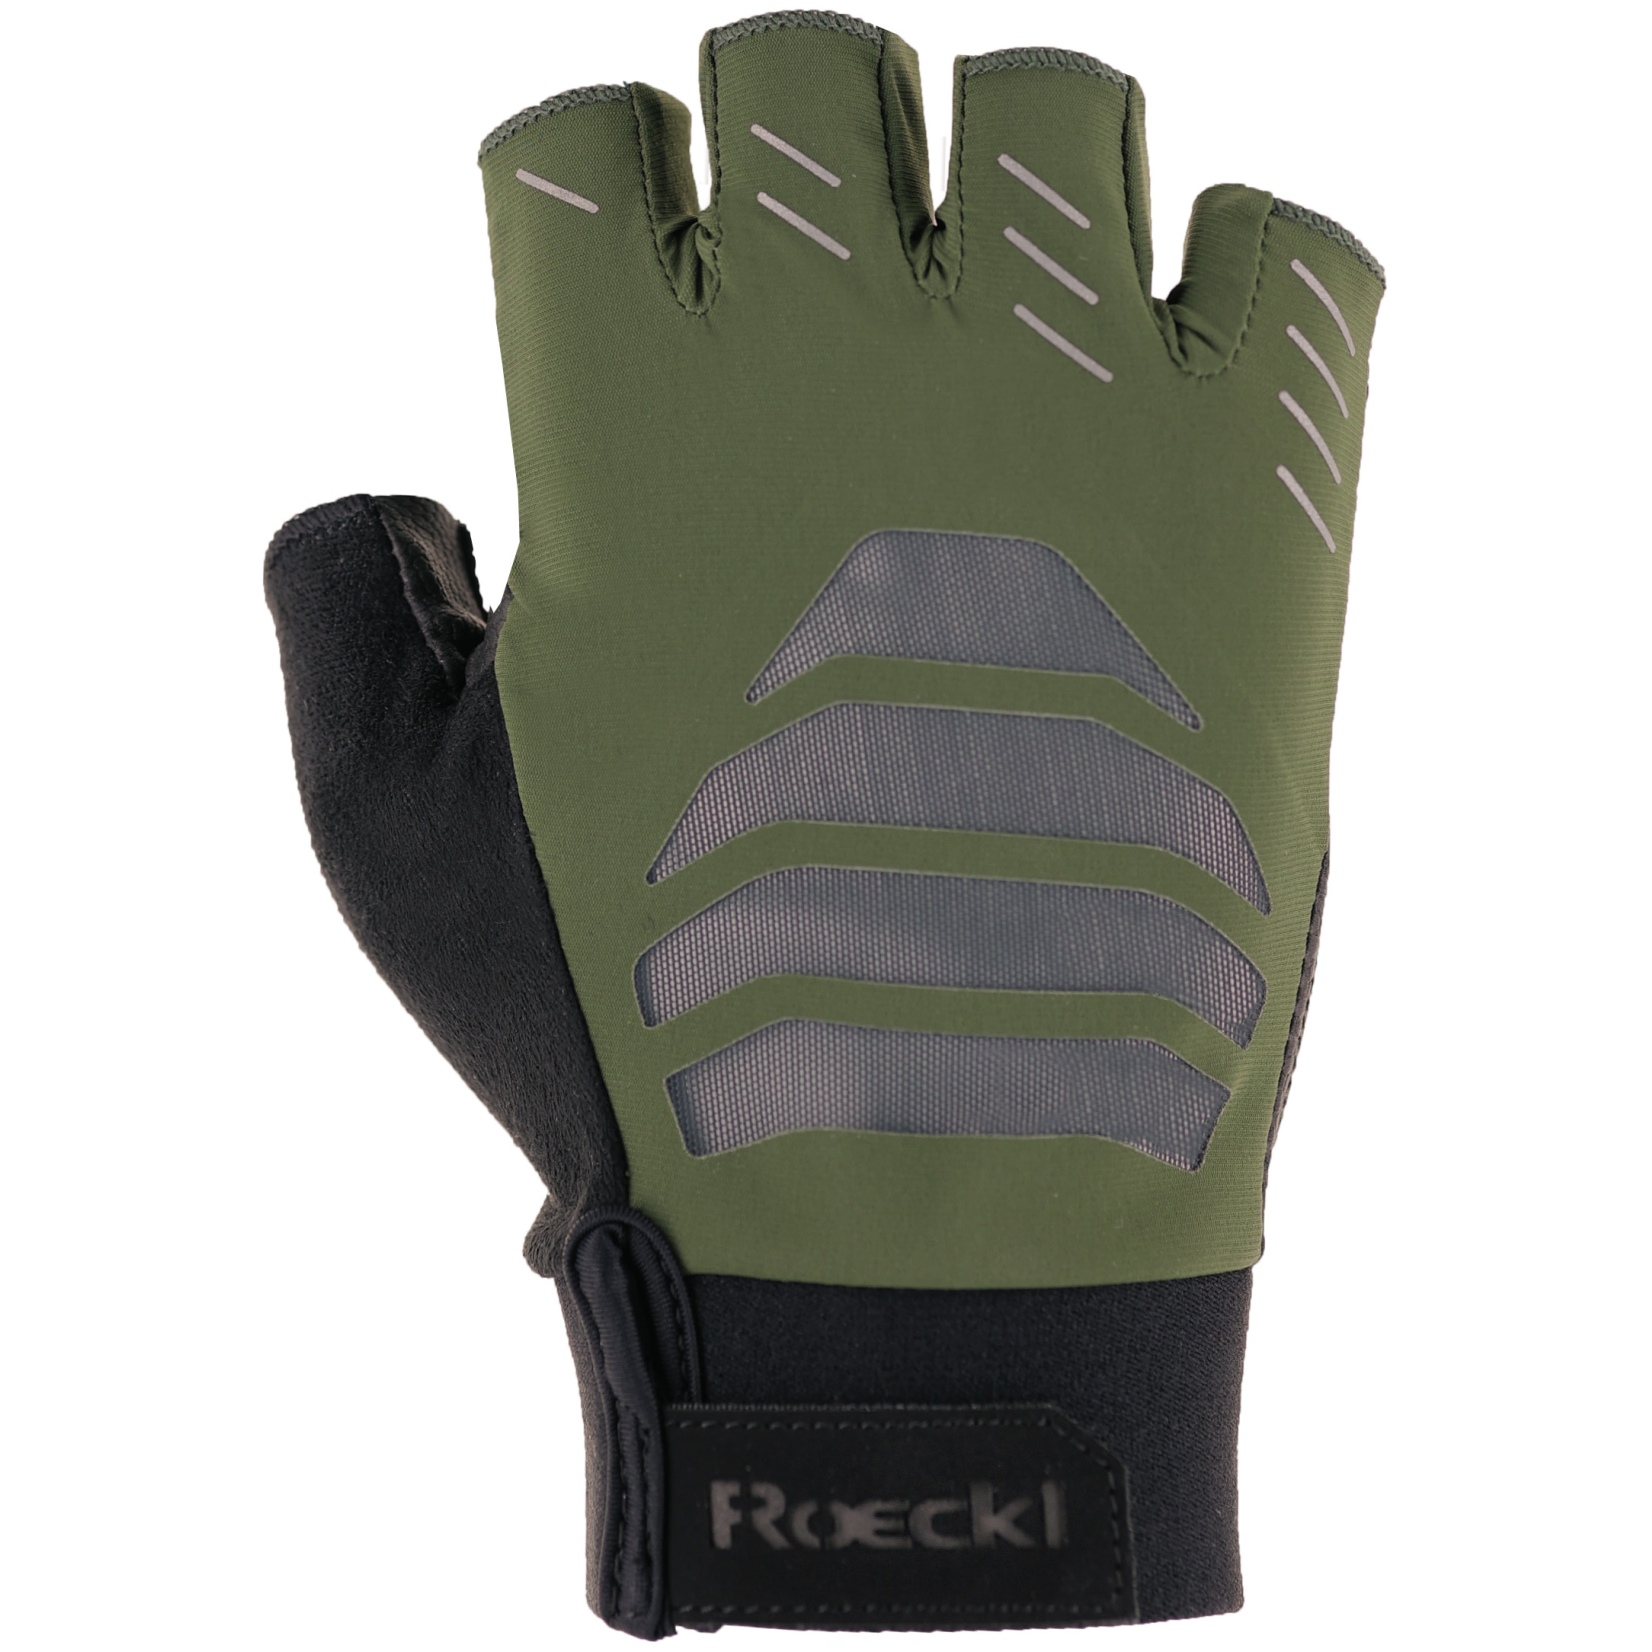 Produktbild von Roeckl Sports Irai Fahrradhandschuhe - chive green 6830